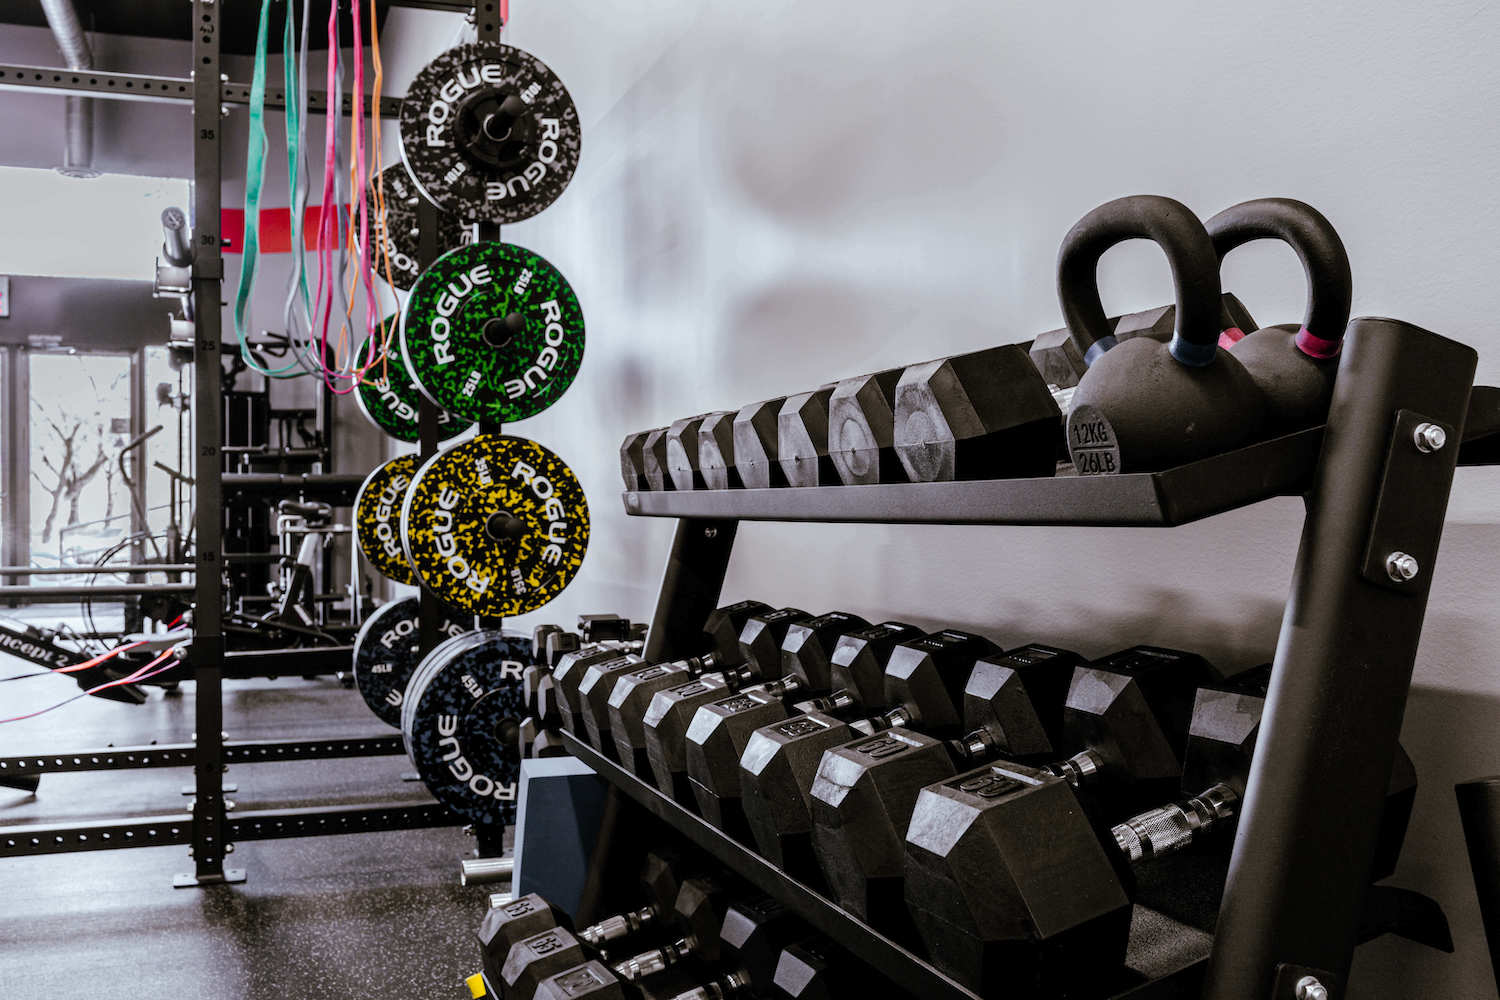 Équipements modernes de Studio Fit U dans notre gym privé à Montréal, montrant une variété d'appareils de haute qualité pour entraînement privé, adaptés à la perte de poids et au renforcement musculaire.